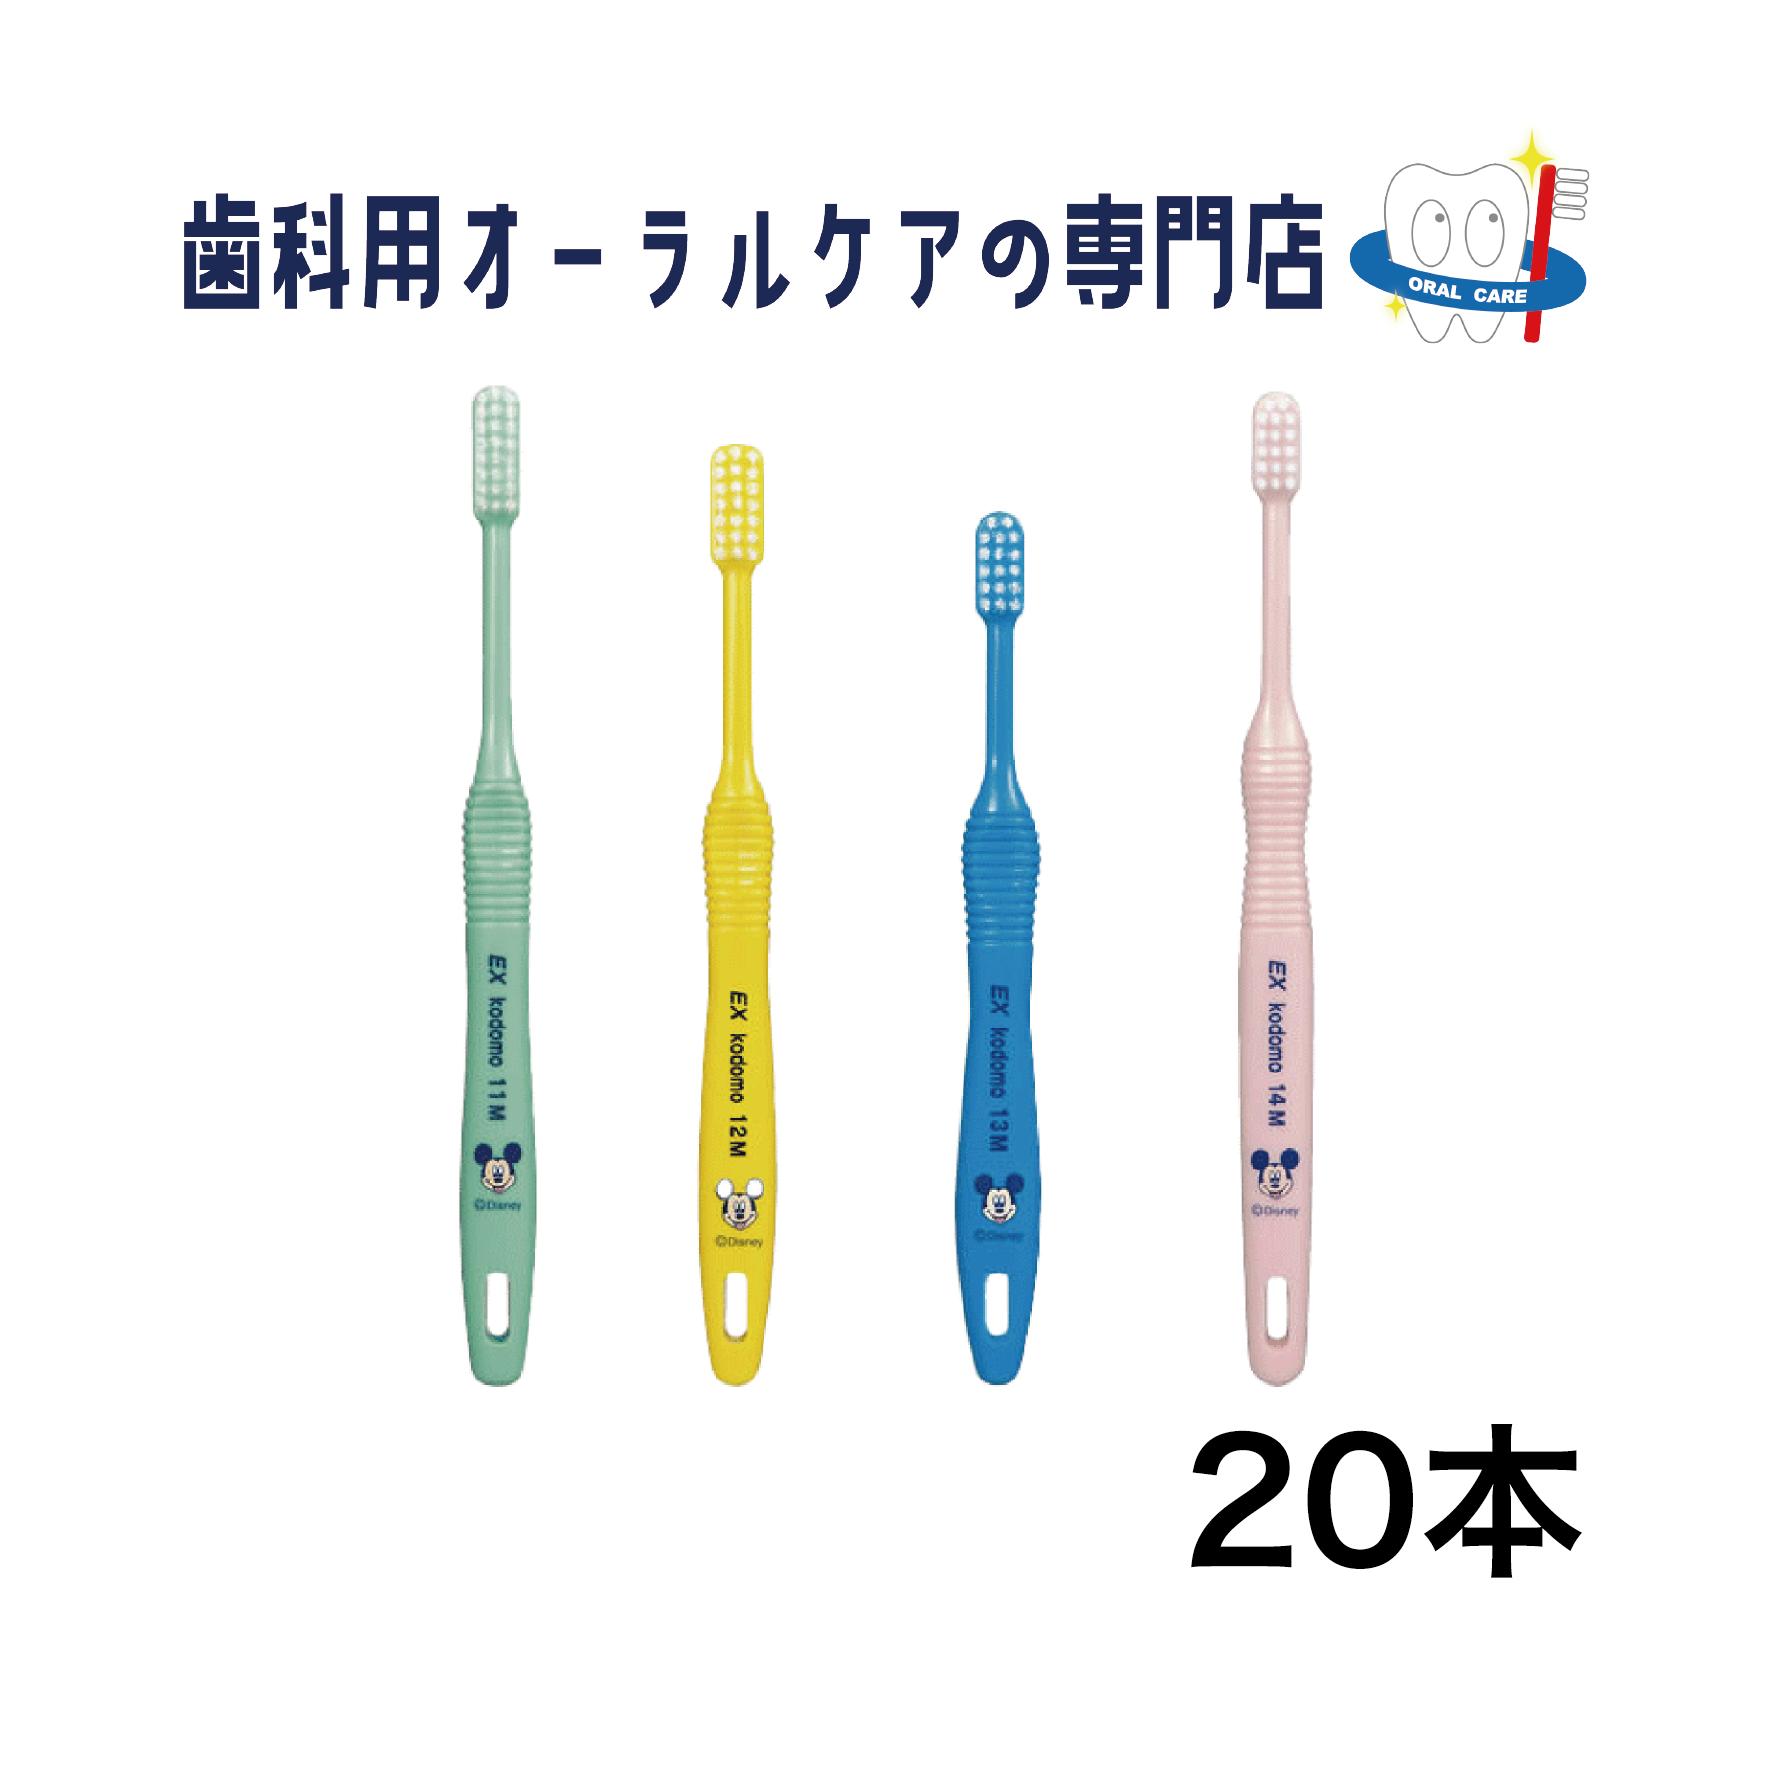 ライオン DENT EX kodomo ディズニー歯ブラシ 20本セット